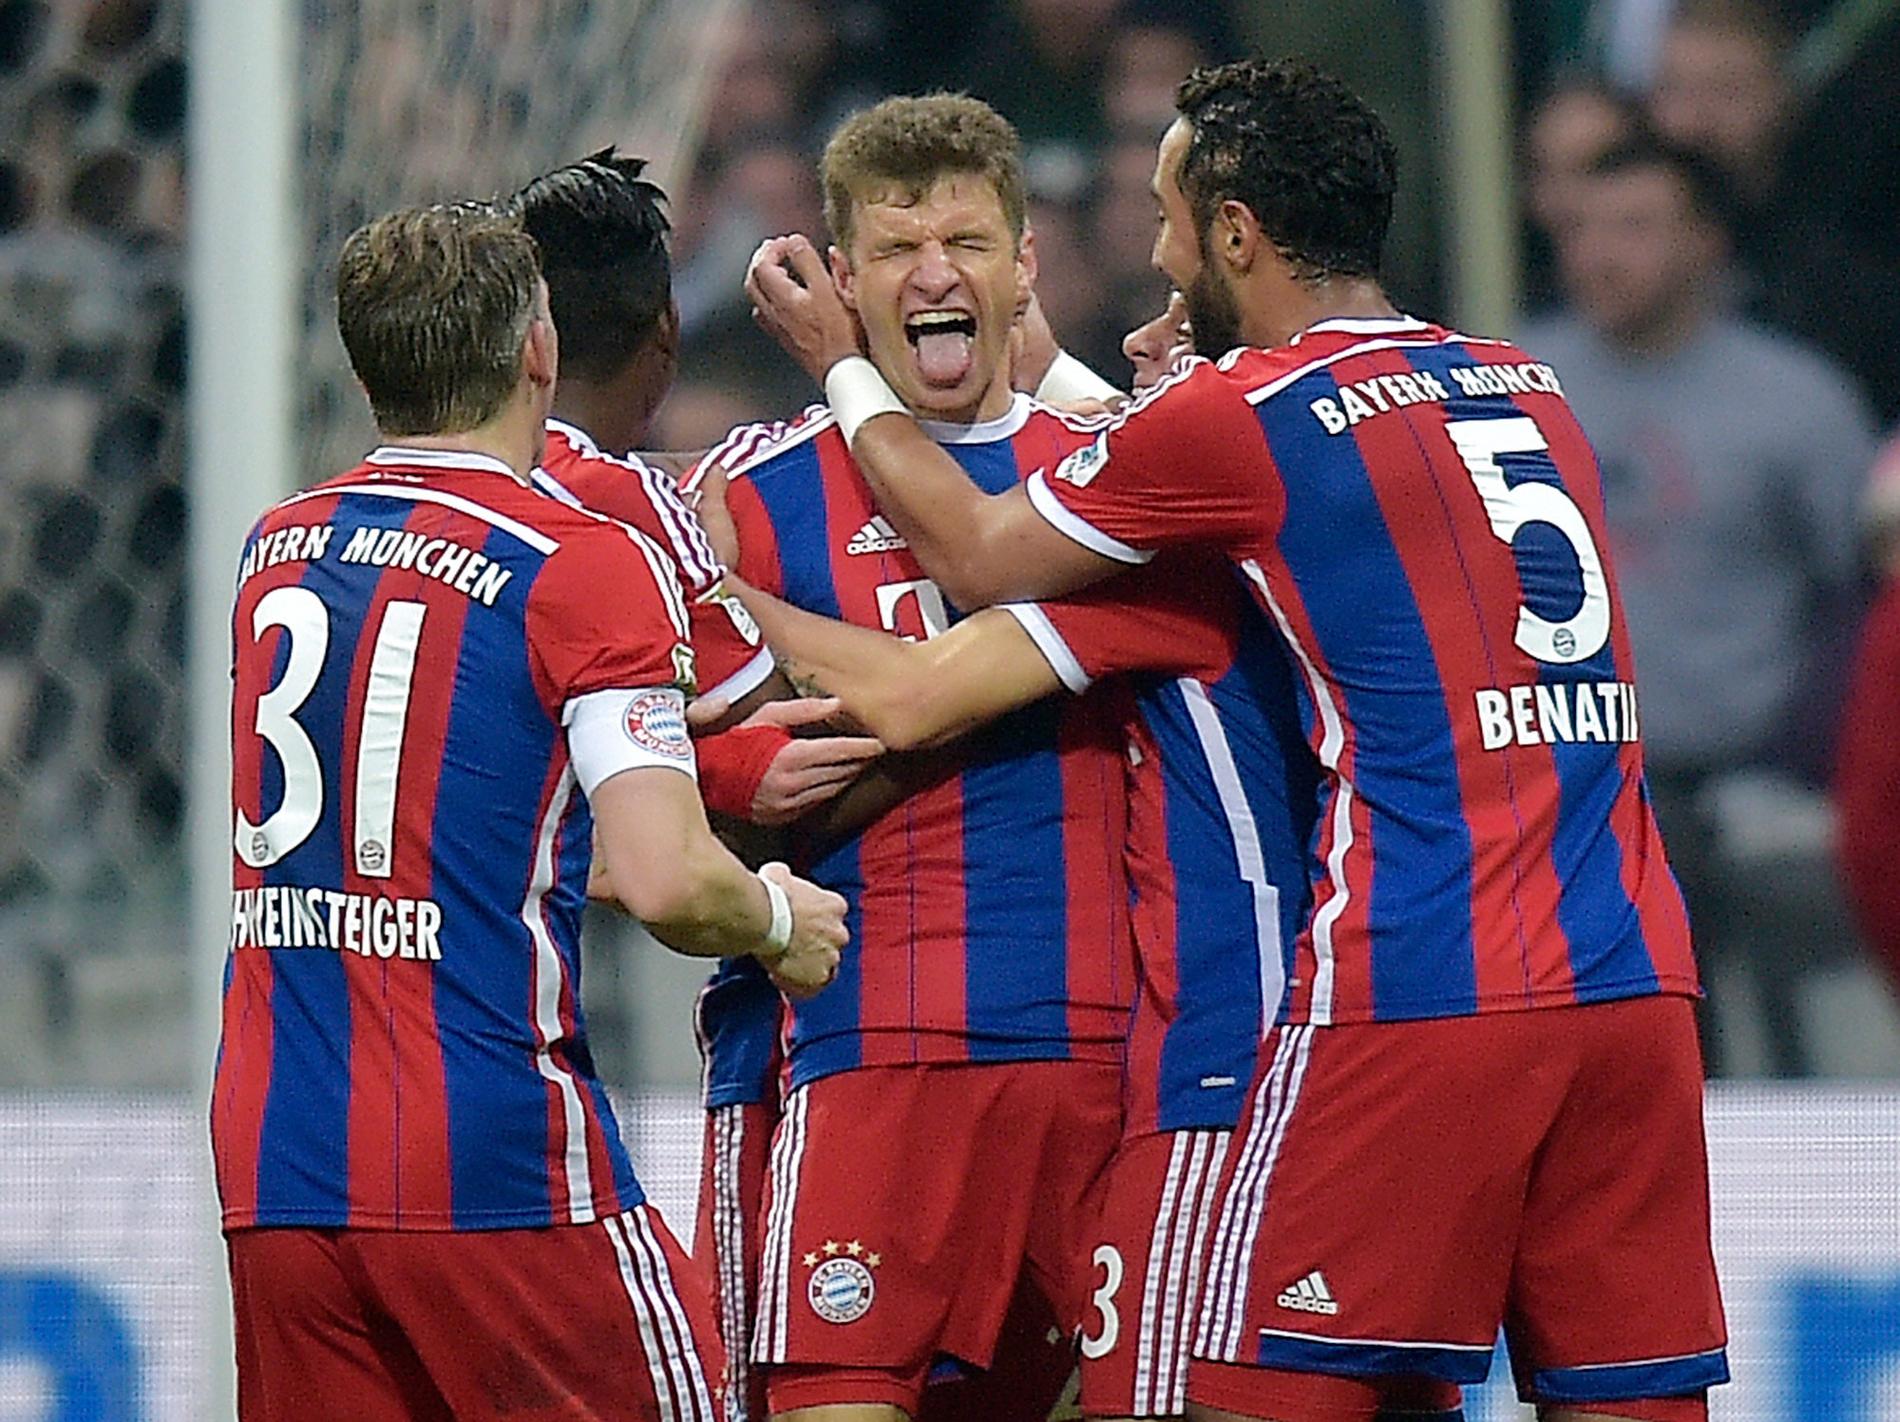 Sluta lipa Thomas Müller, oddsen pekar på att Bayern München vinner Champions League.